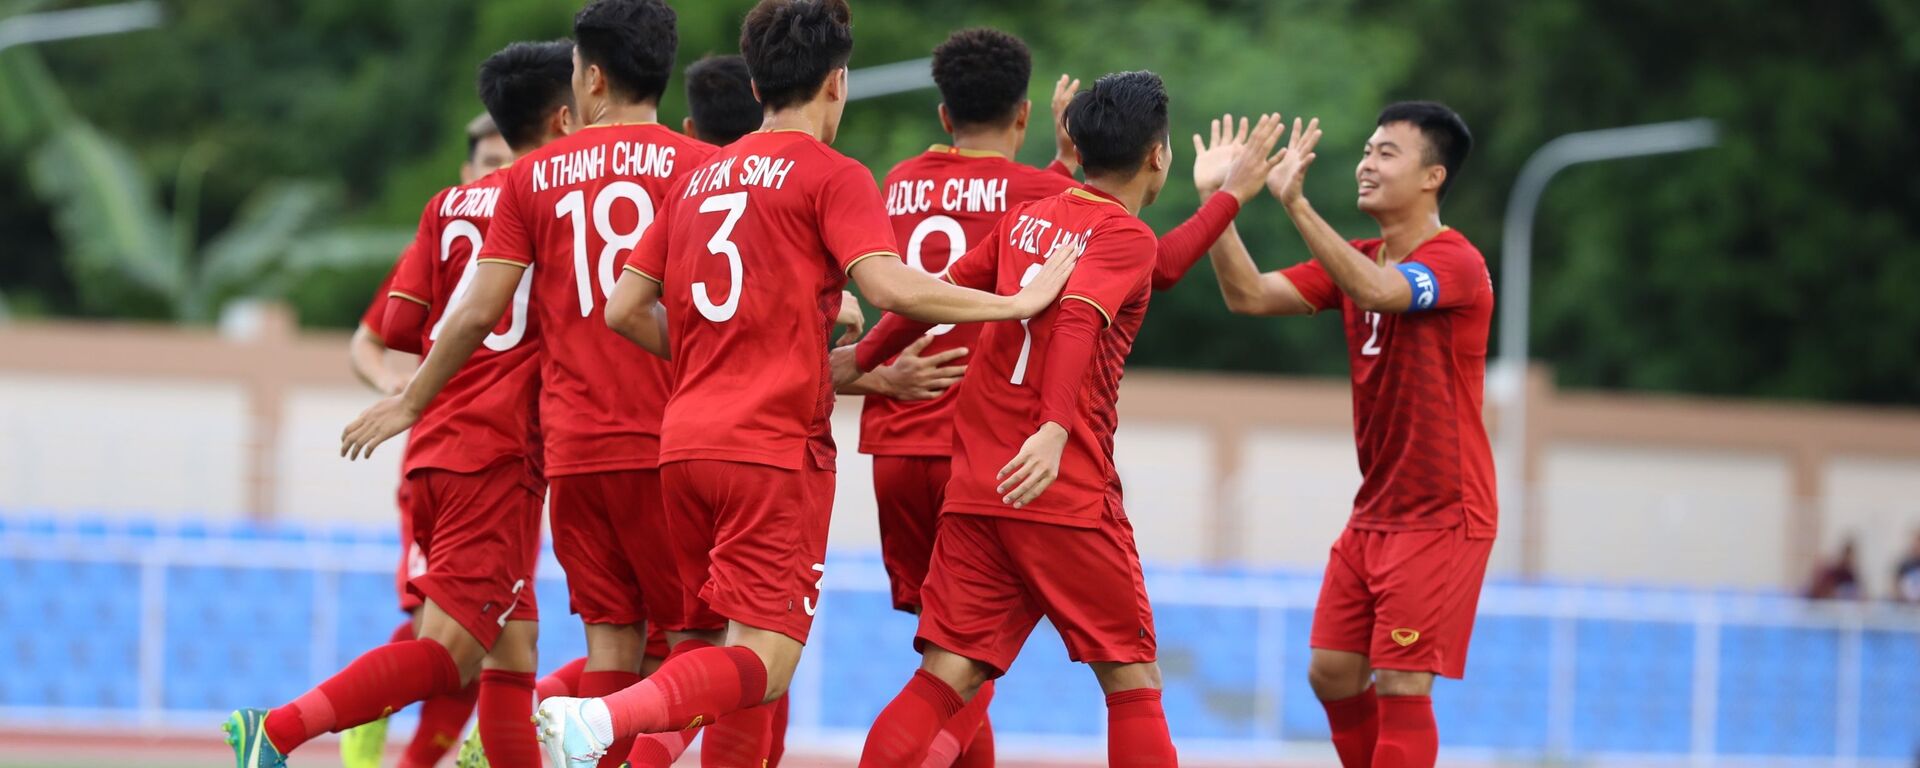 Các cầu thủ U22 Việt Nam vui mừng khi ghi bàn thắng vào lưới đội tuyển U 22 Brunei. - Sputnik Việt Nam, 1920, 25.11.2019